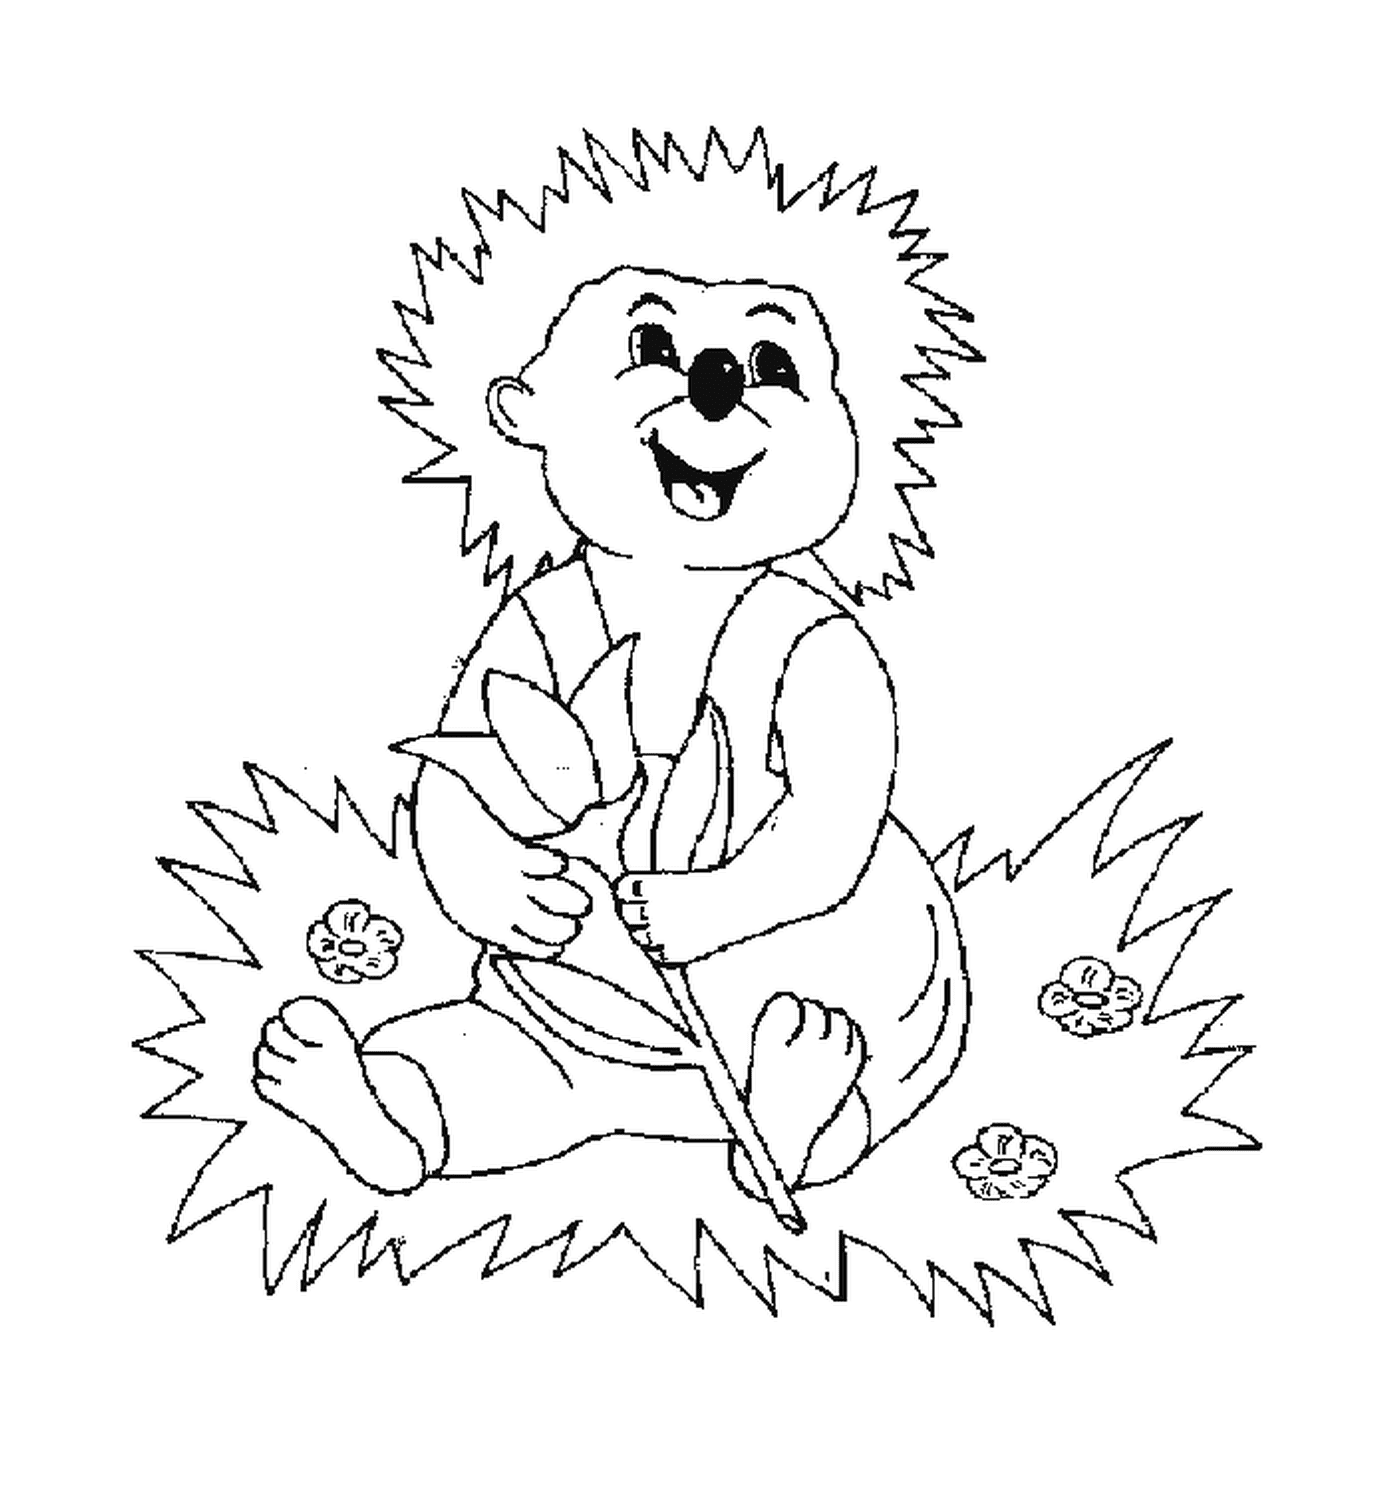  Hedgehog sentado na grama 